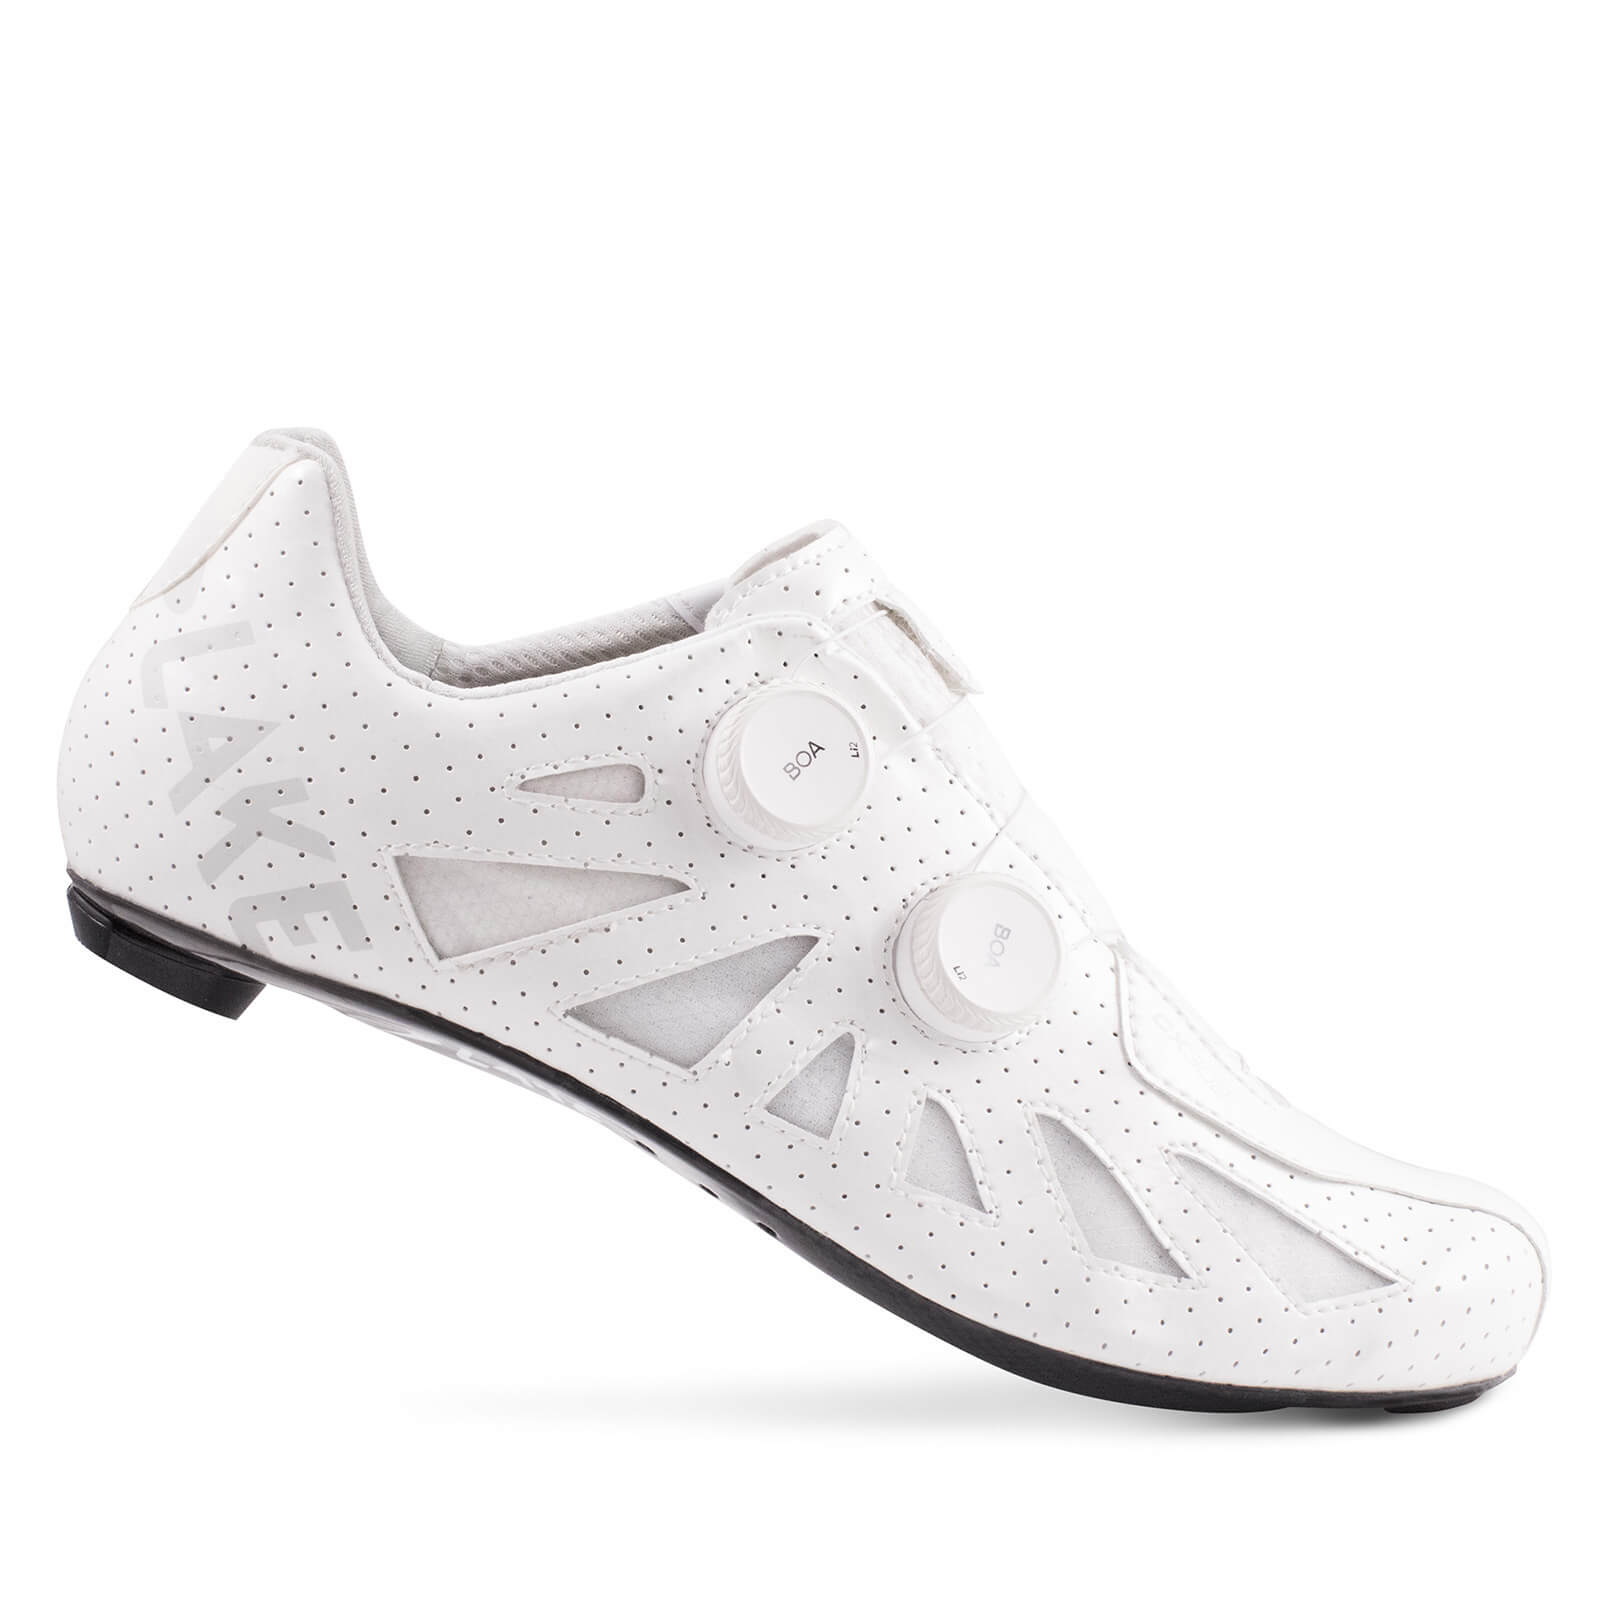 Lake CX302 Road Shoes - EU46 - White